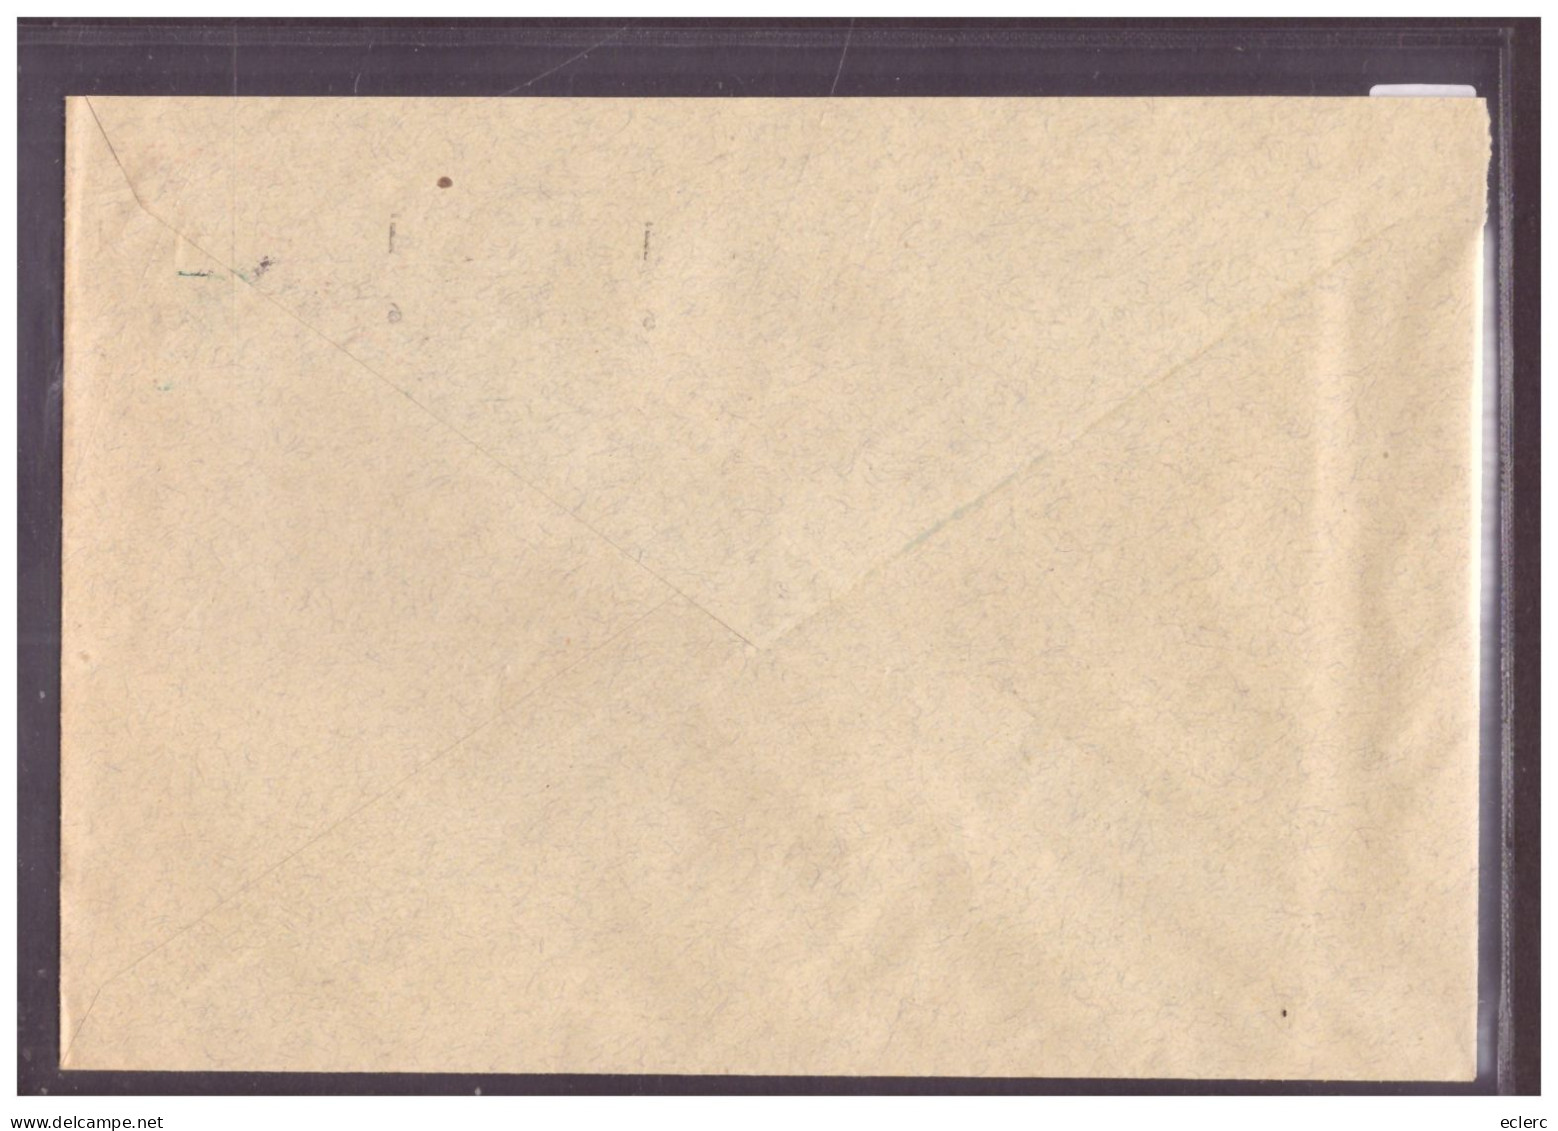 AFFR. MECANIQUE 1936 - KONFEKTION MERKUR A.G. BASEL - Postage Meters